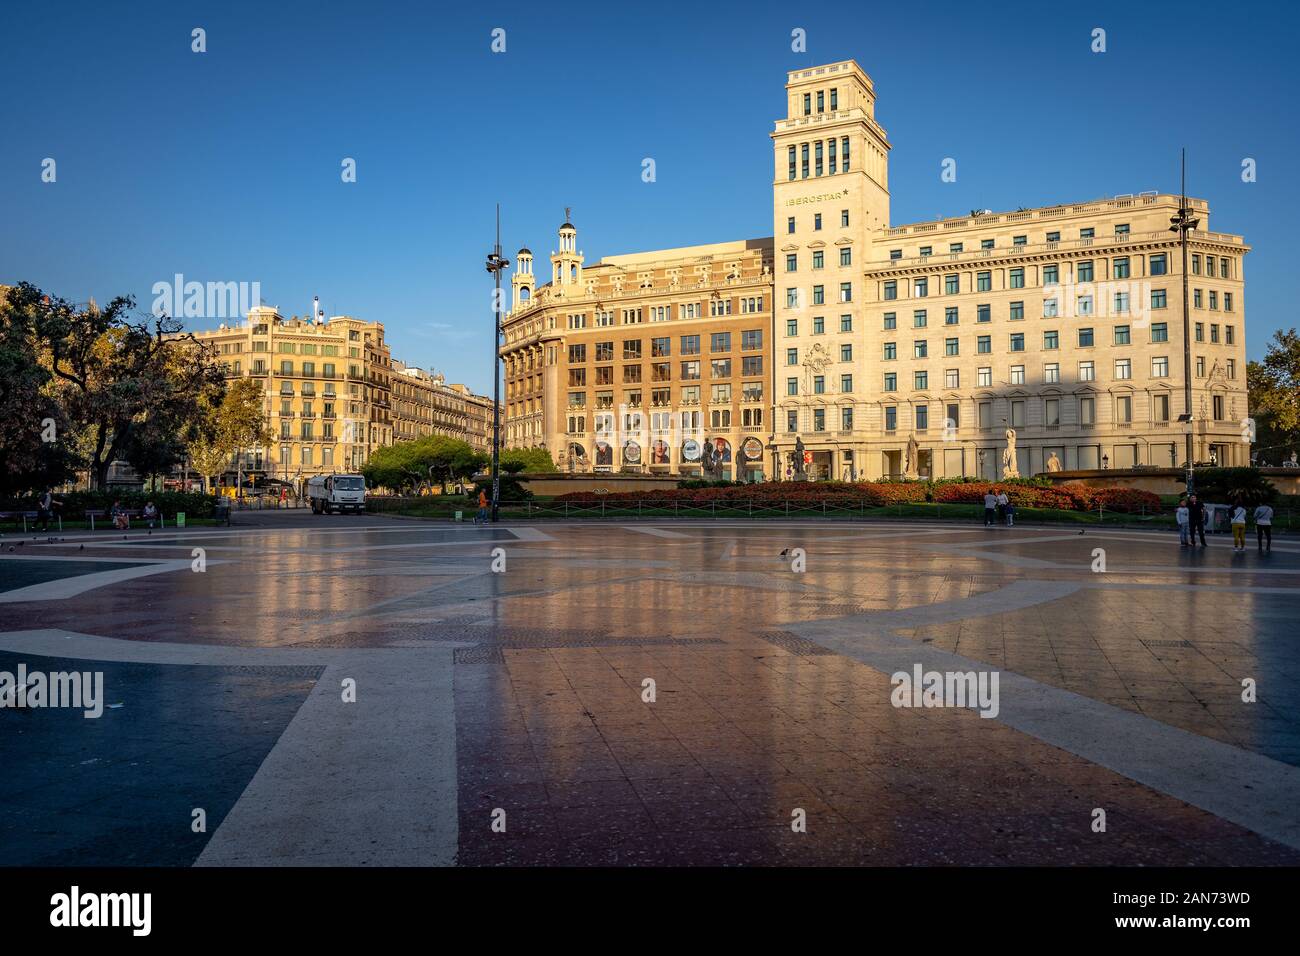 Barcelone, Espagne - Les bâtiments autour de la place centrale - Plaza de Catalunya Banque D'Images